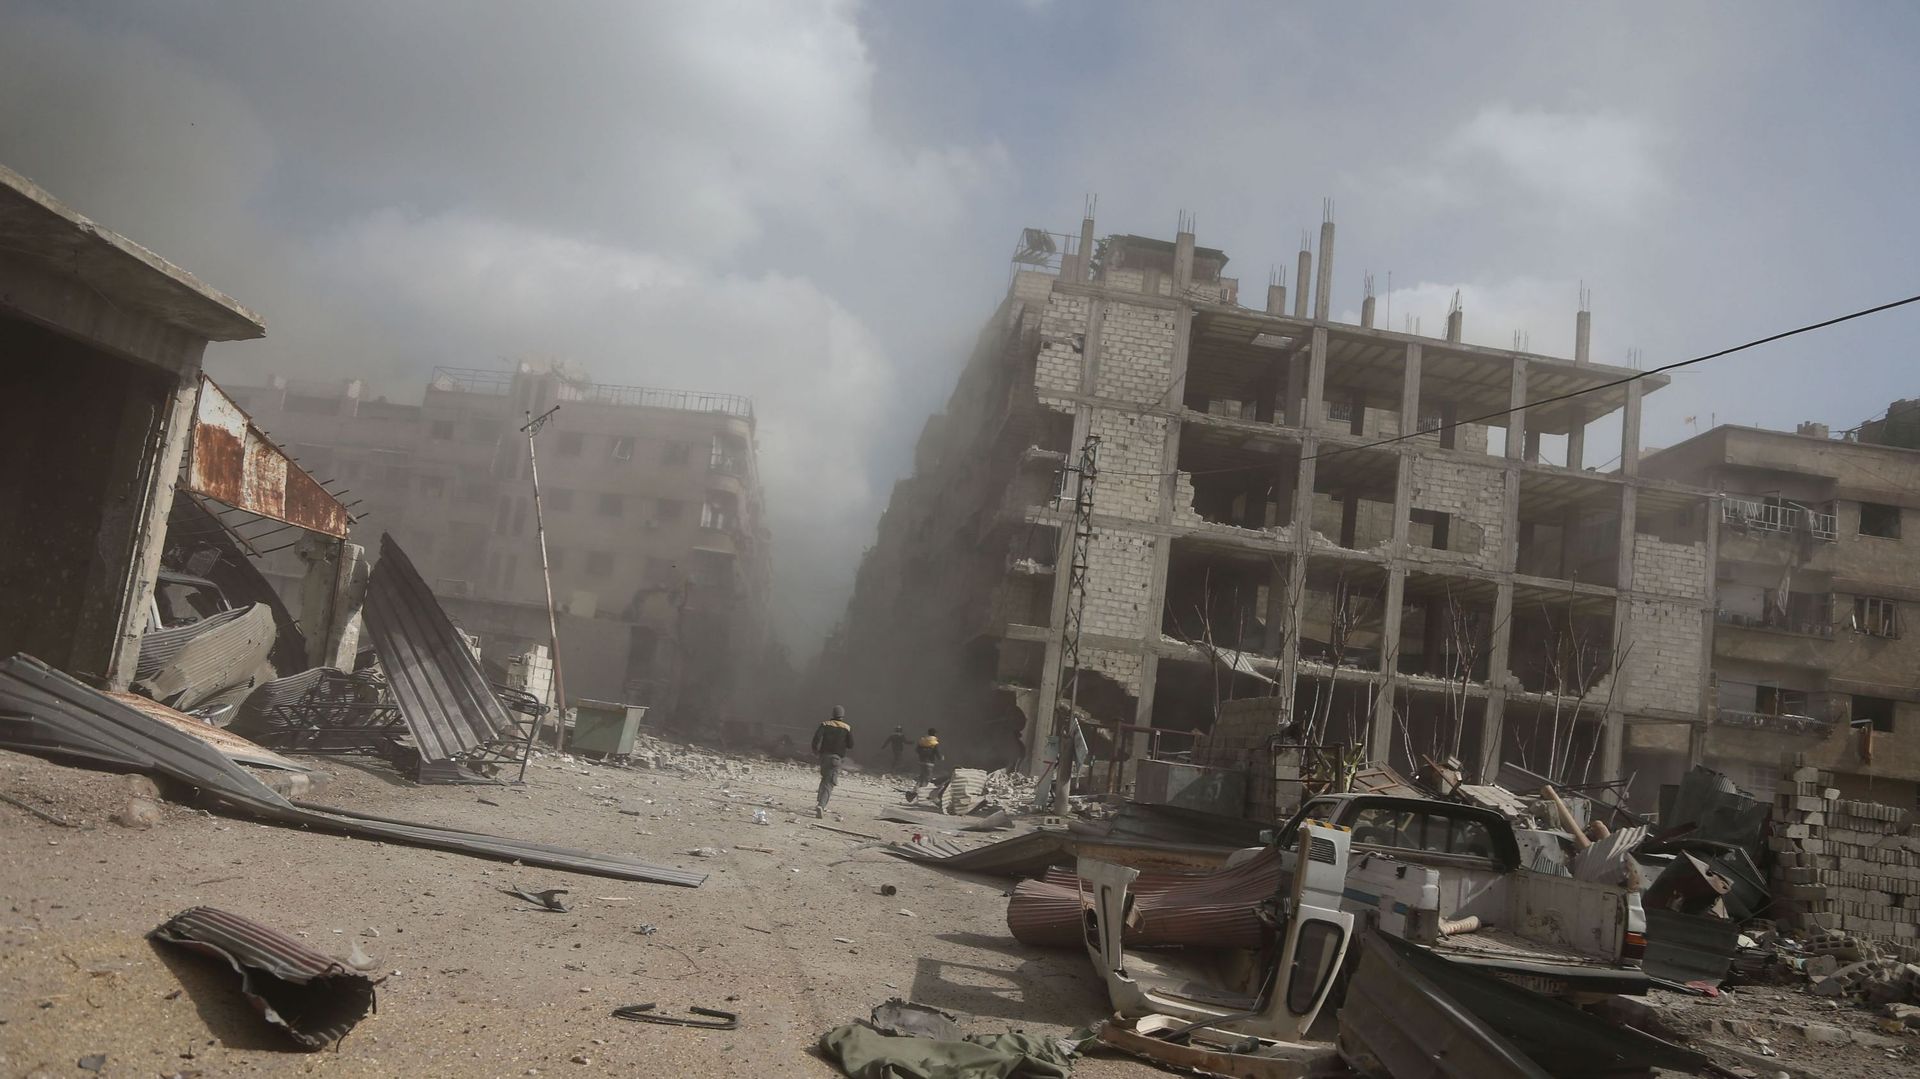 Les leaders européens demandent une trêve immédiate dans la Ghouta orientale en Syrie